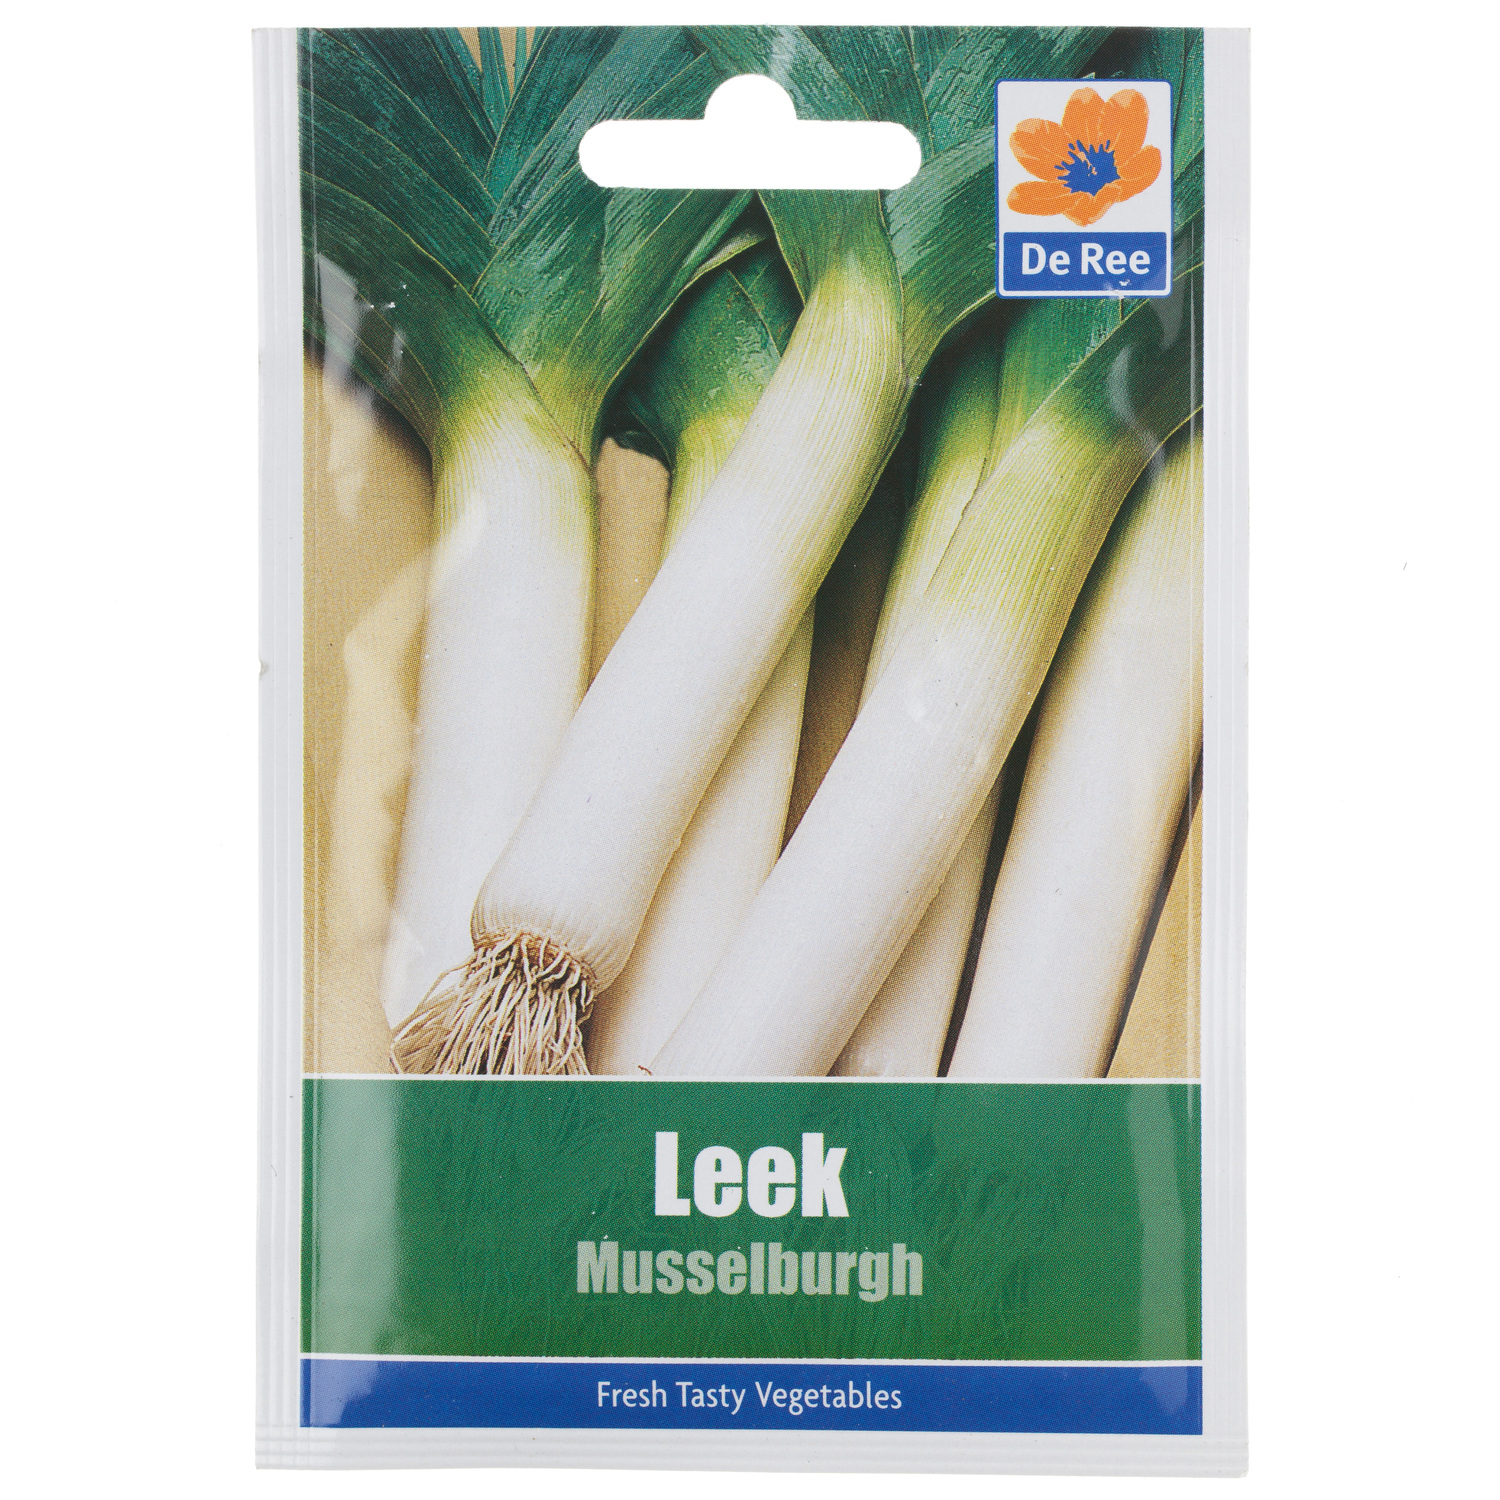 Leek Musselburgh Seed Packet Image